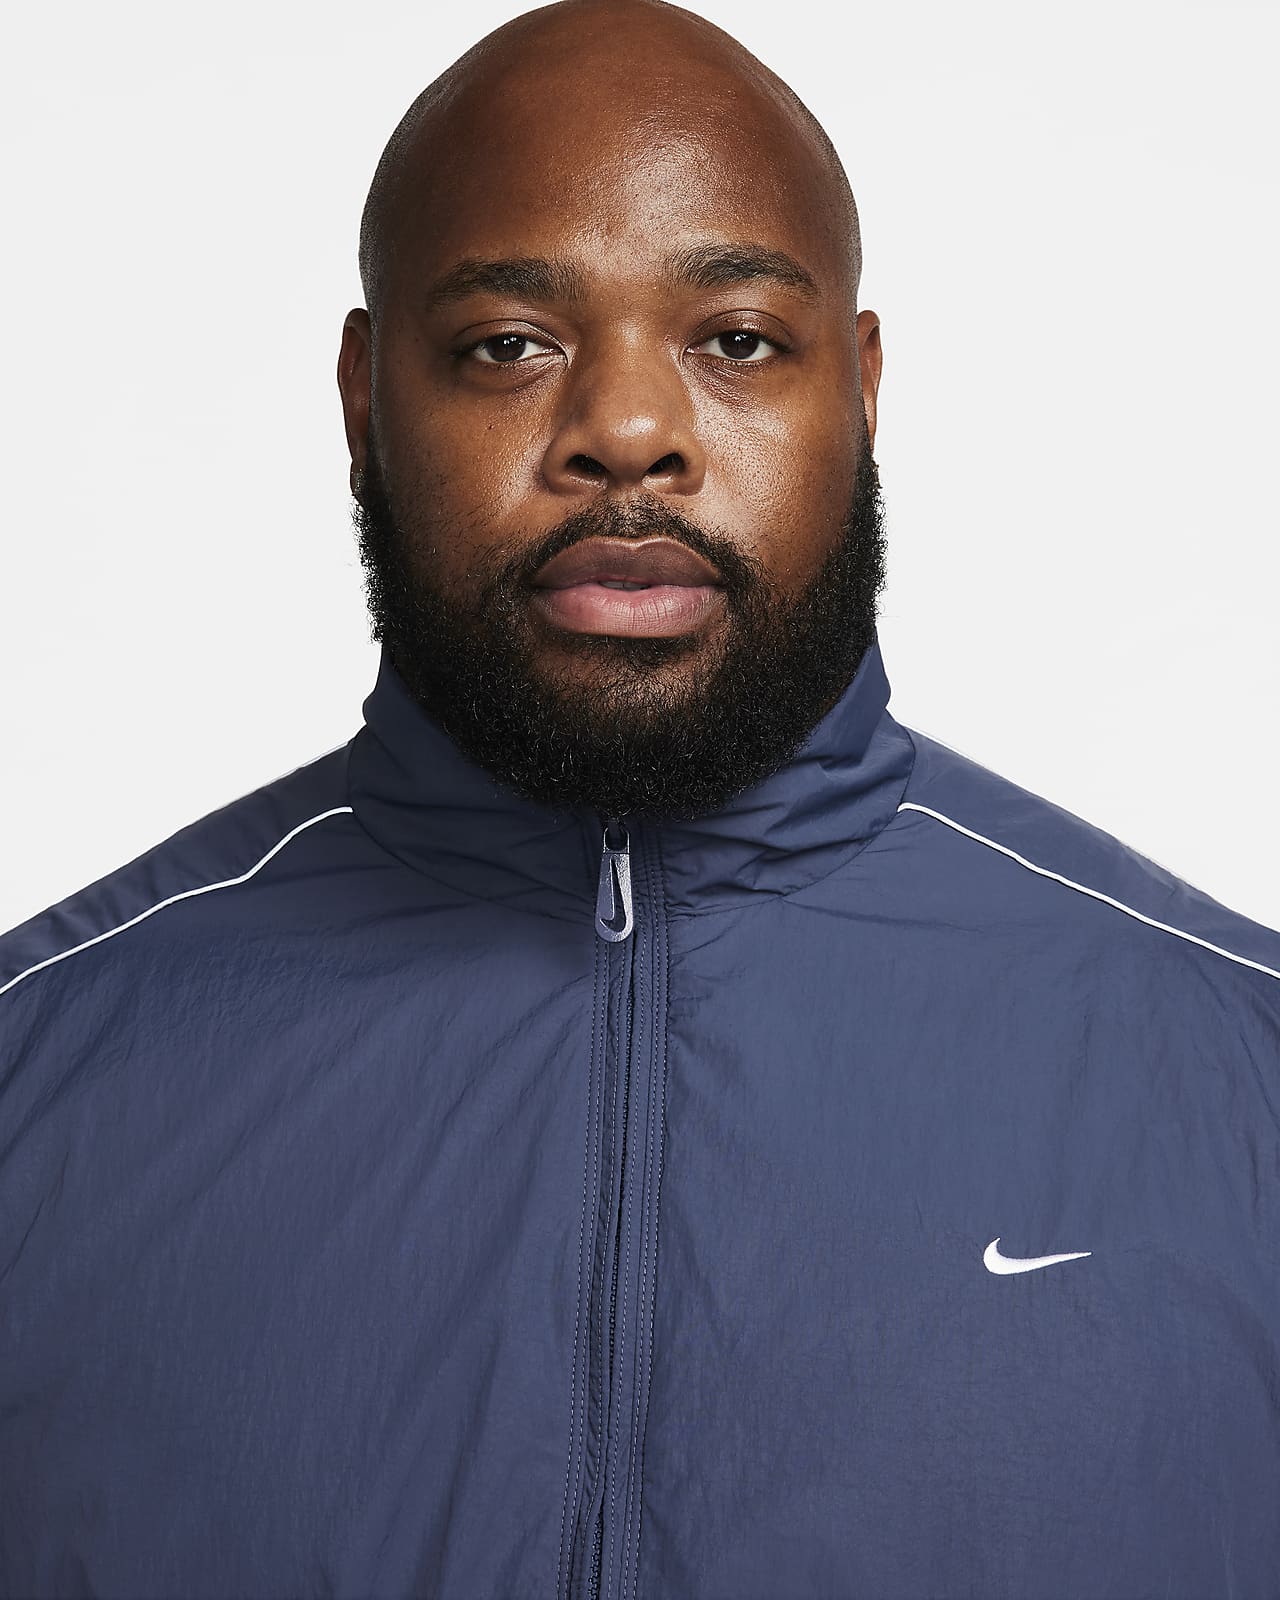 Nike Sportswear Solo Swoosh Men's Woven Track Jacket